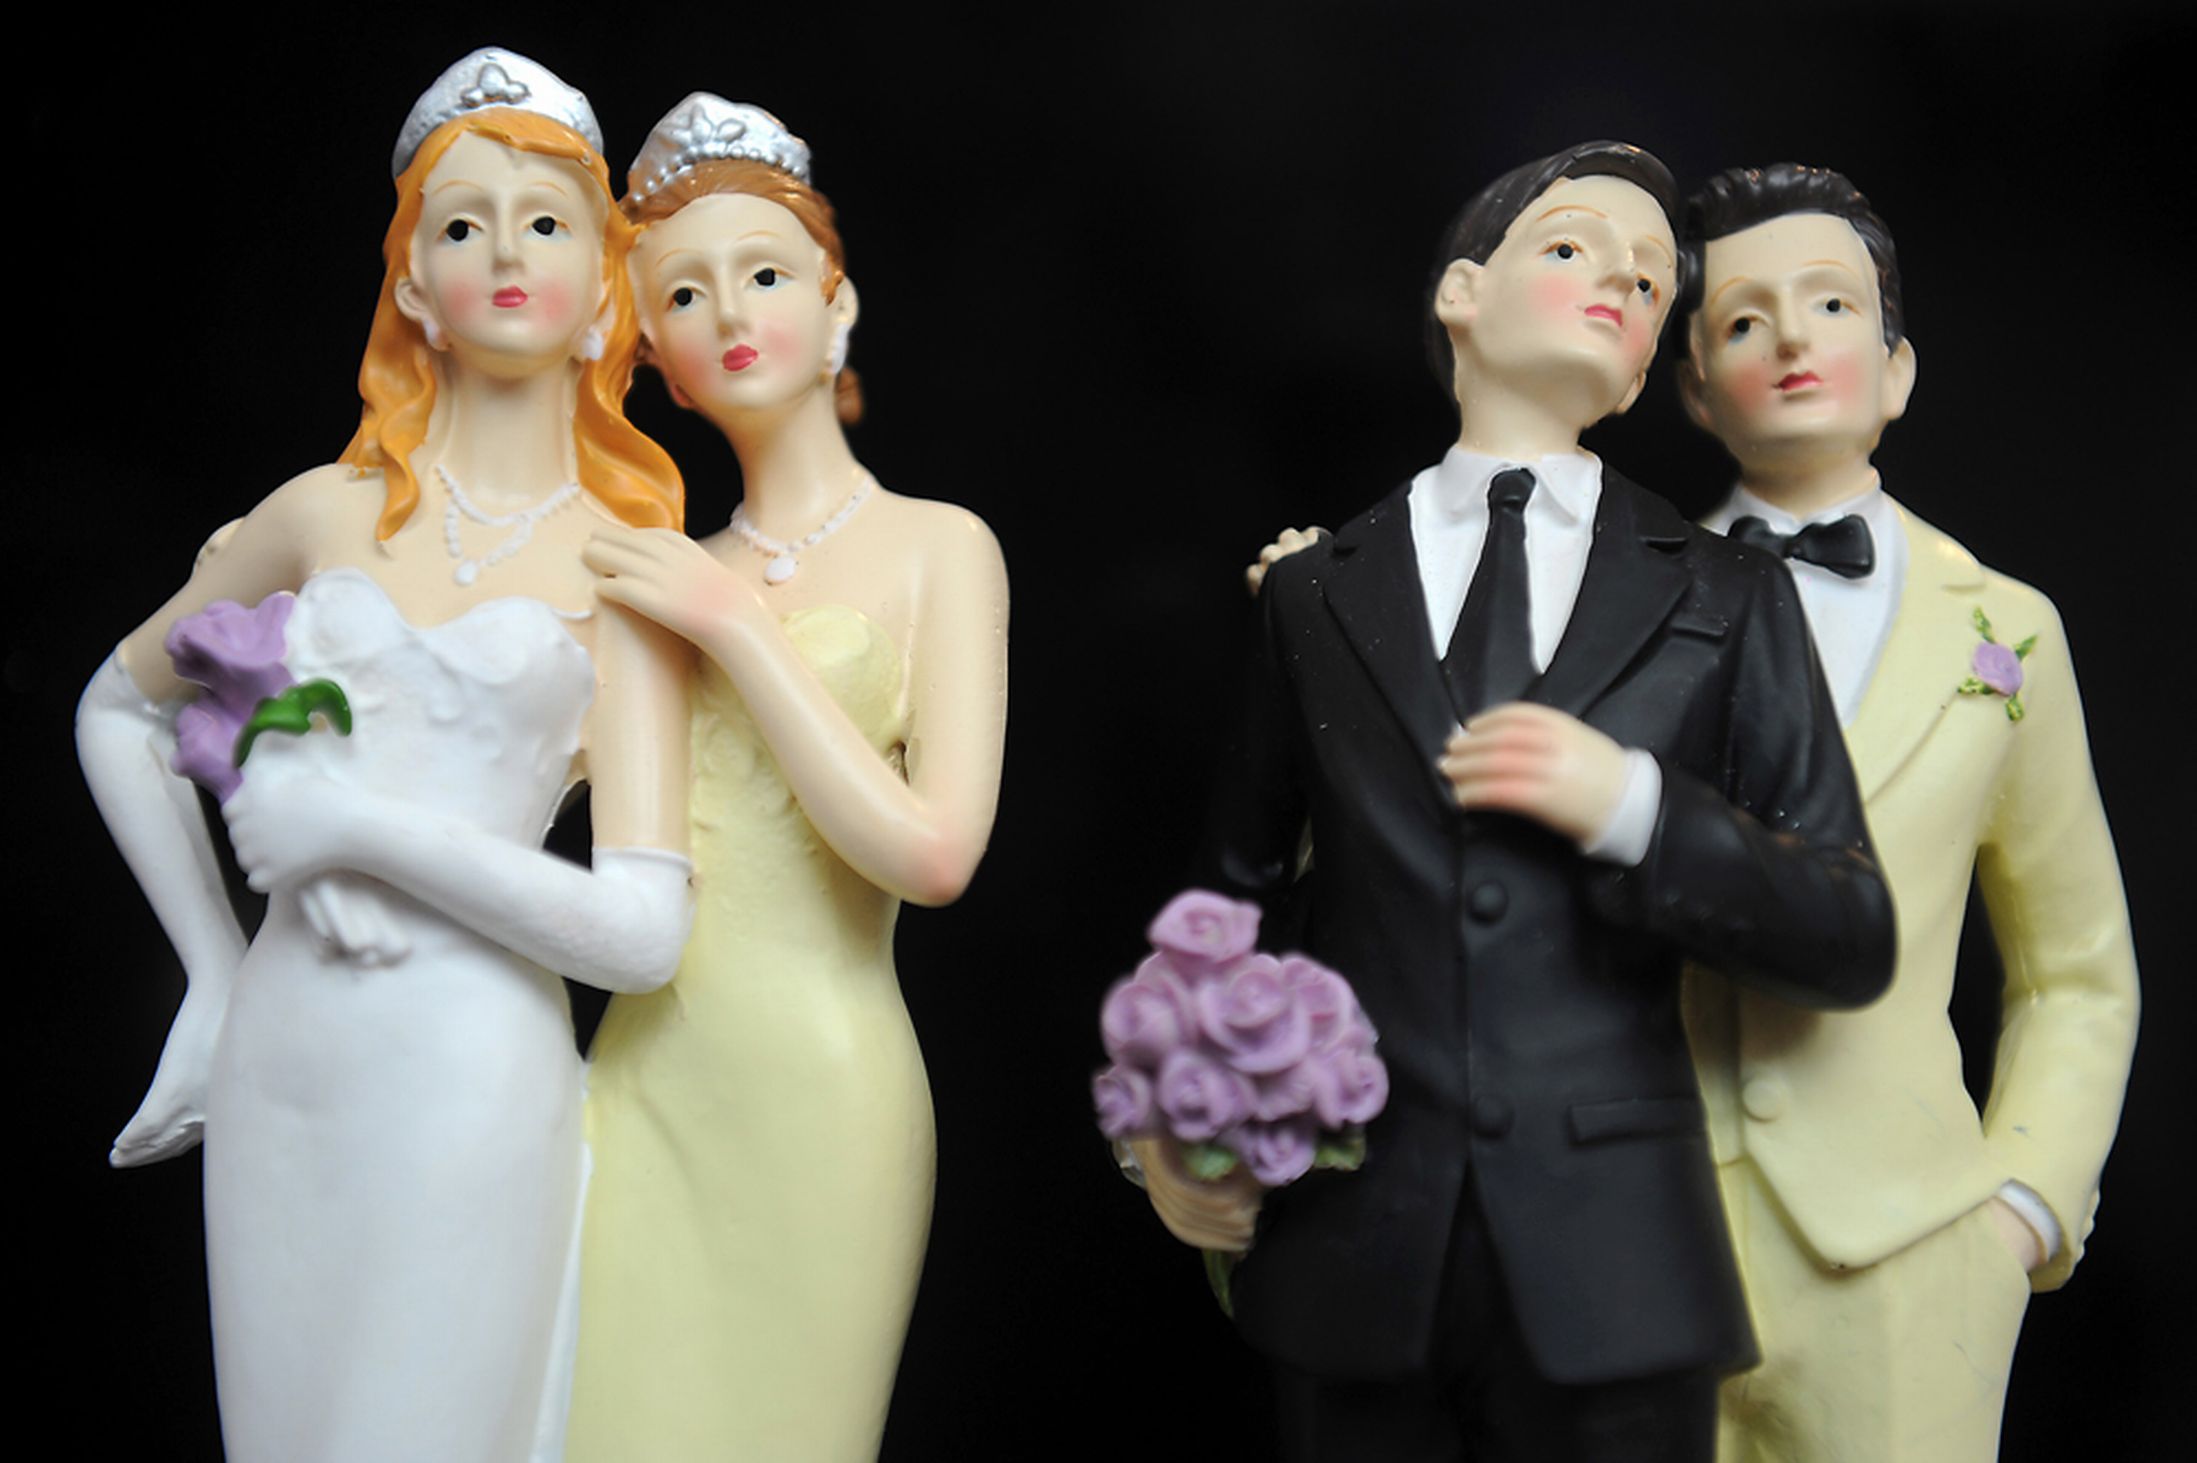 Nozze gay in Italia: Cassazione convalida il primo matrimonio tra due donne